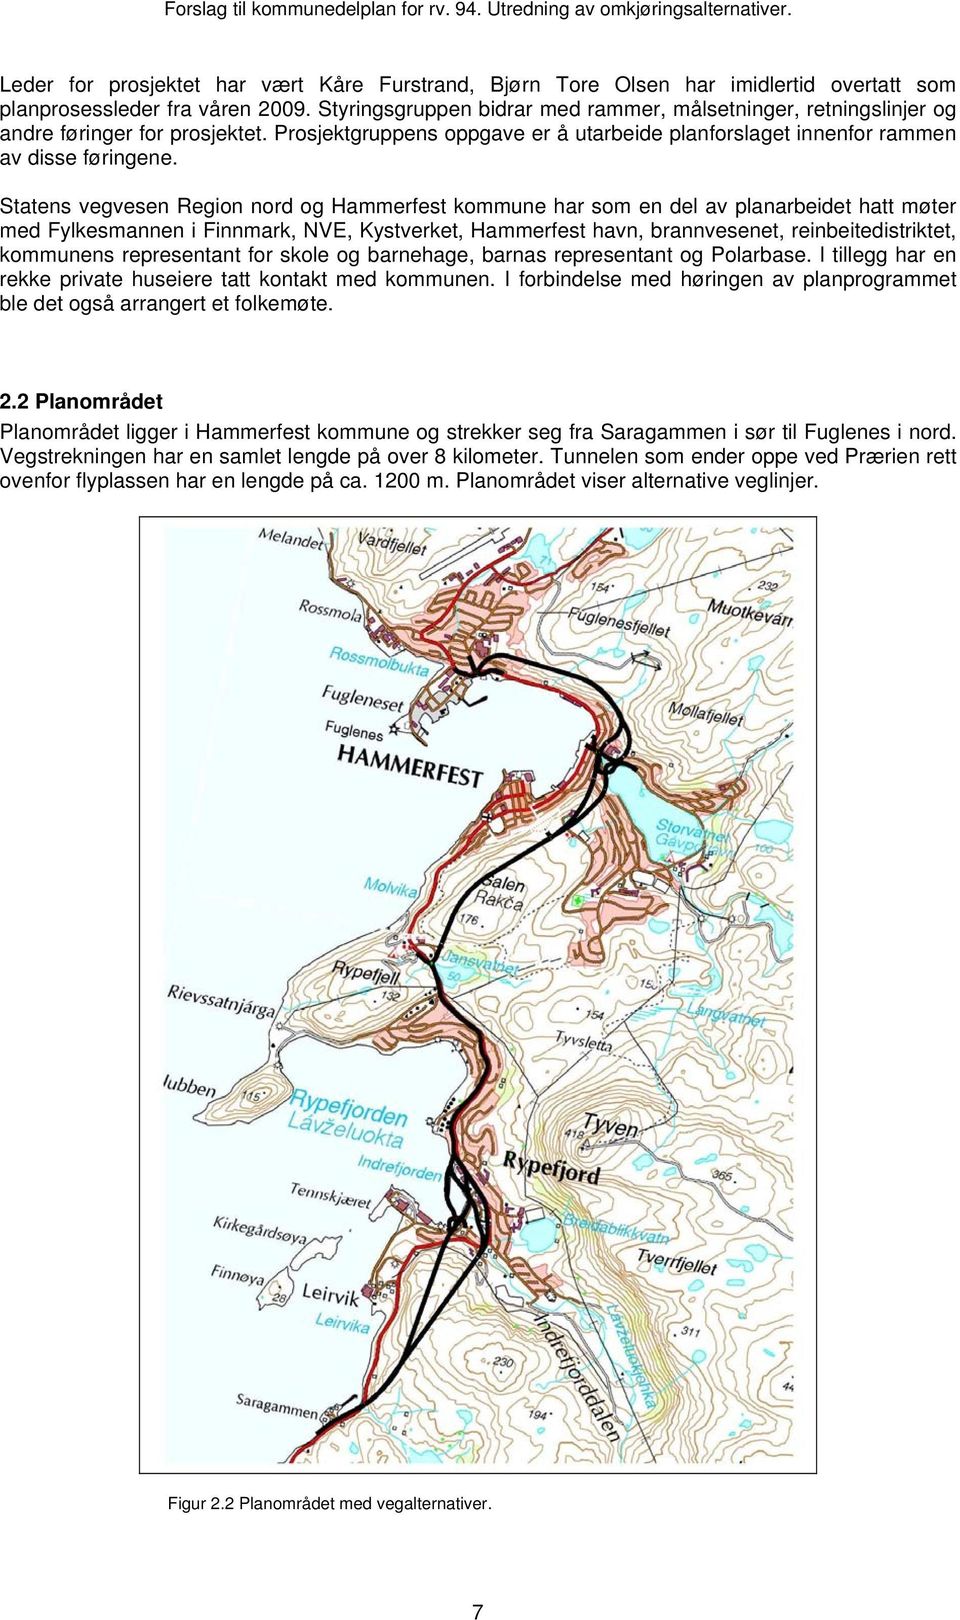 Statens vegvesen Region nord og Hammerfest kommune har som en del av planarbeidet hatt møter med Fylkesmannen i Finnmark, NVE, Kystverket, Hammerfest havn, brannvesenet, reinbeitedistriktet,